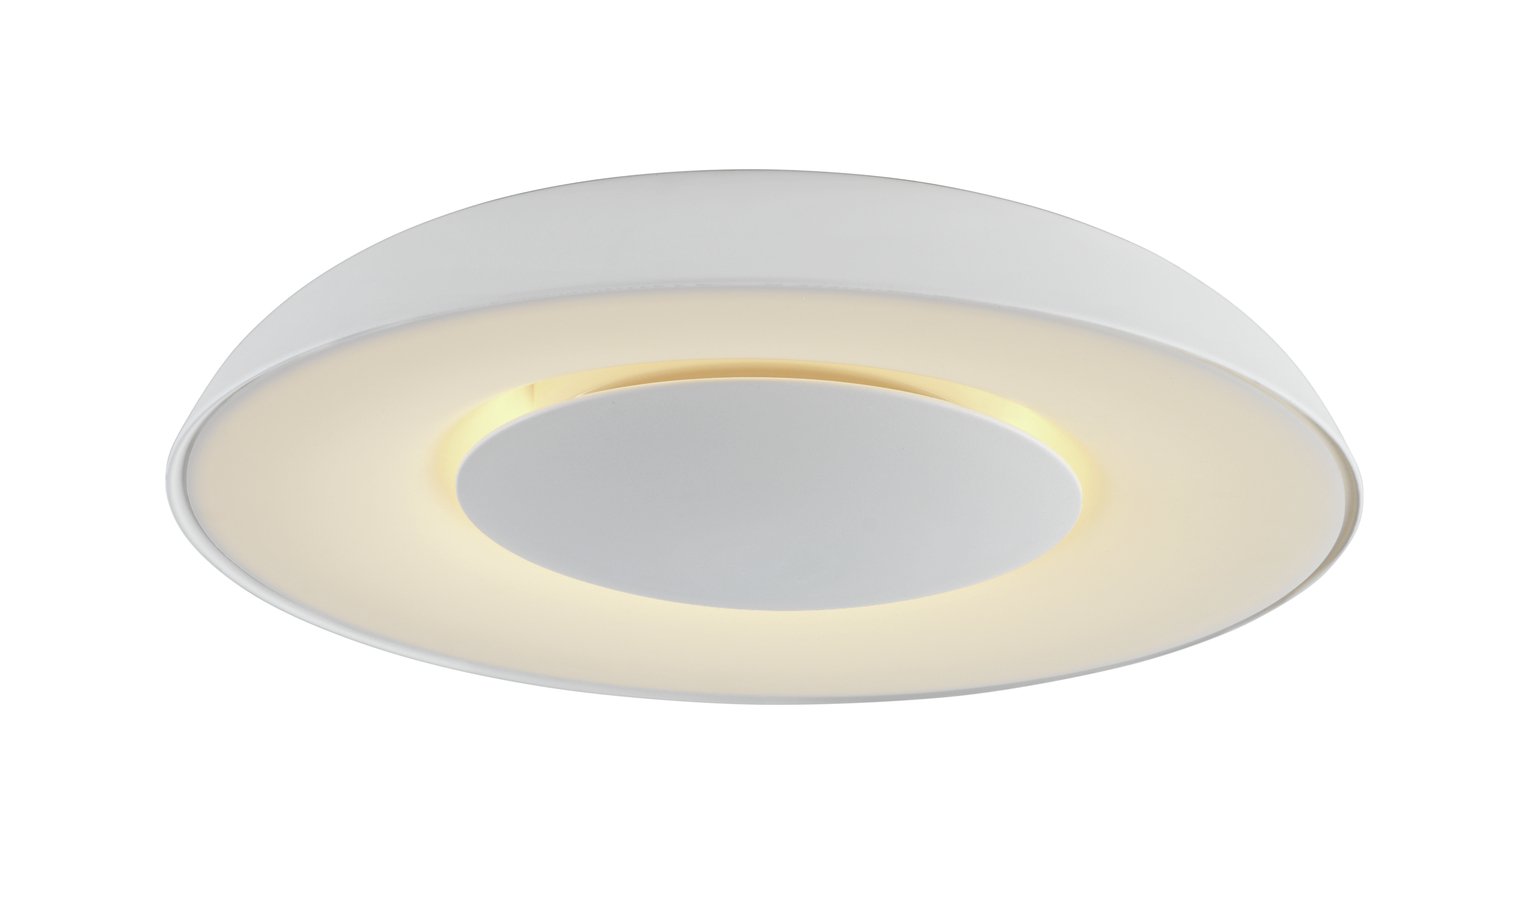 Argos Home Larne LED Flush Ceiling Light - White